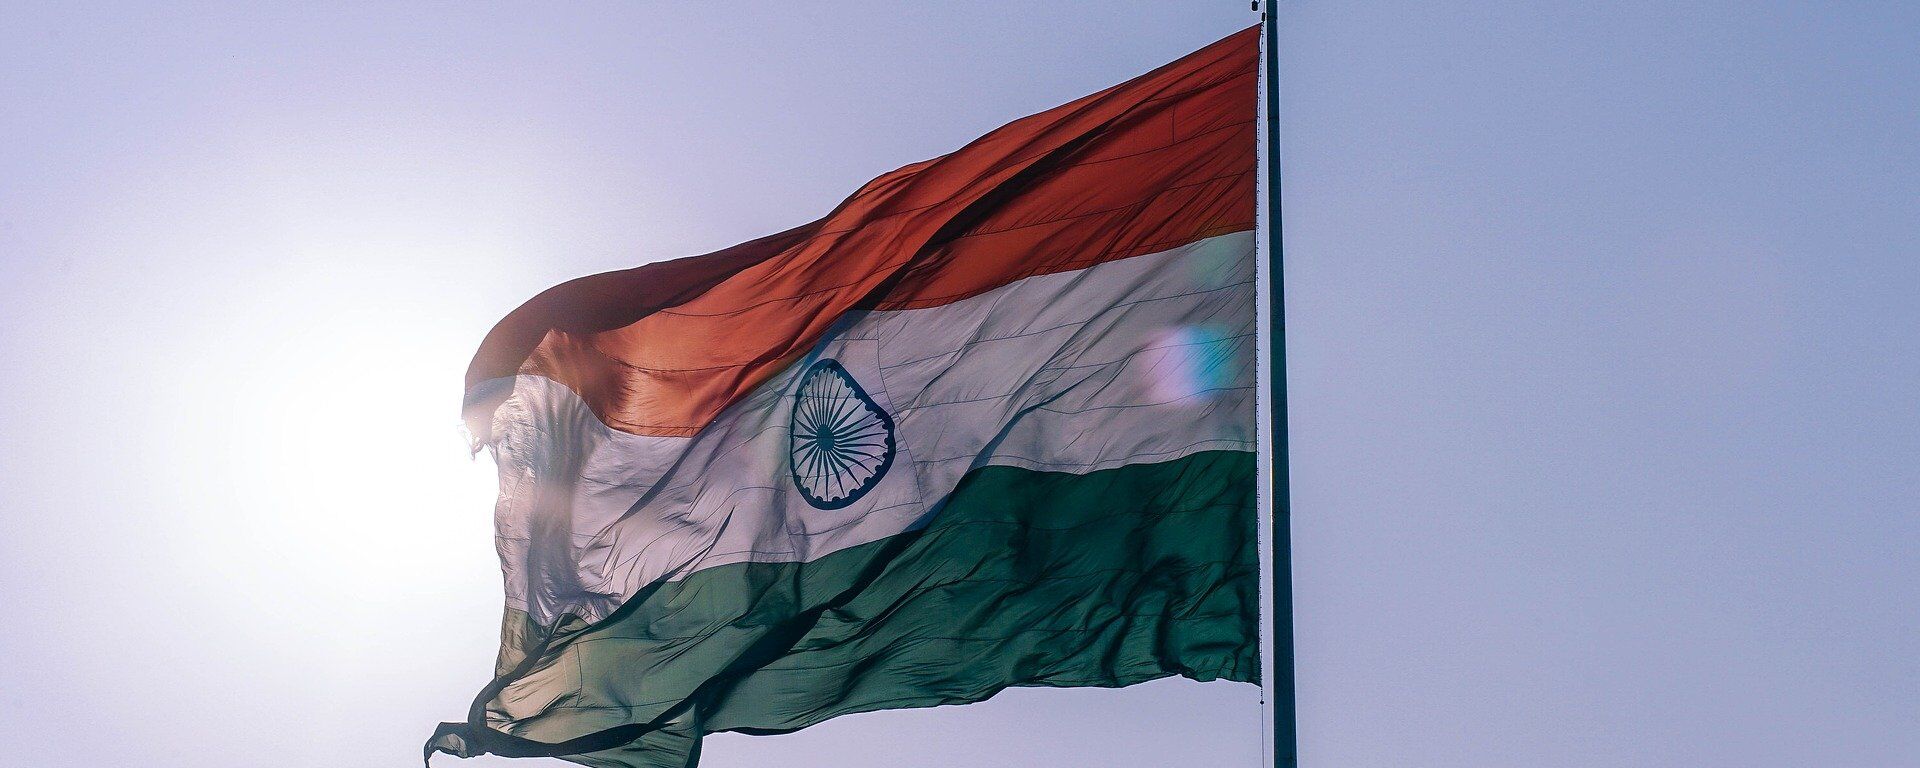 La bandera de la India - Sputnik Mundo, 1920, 27.10.2021